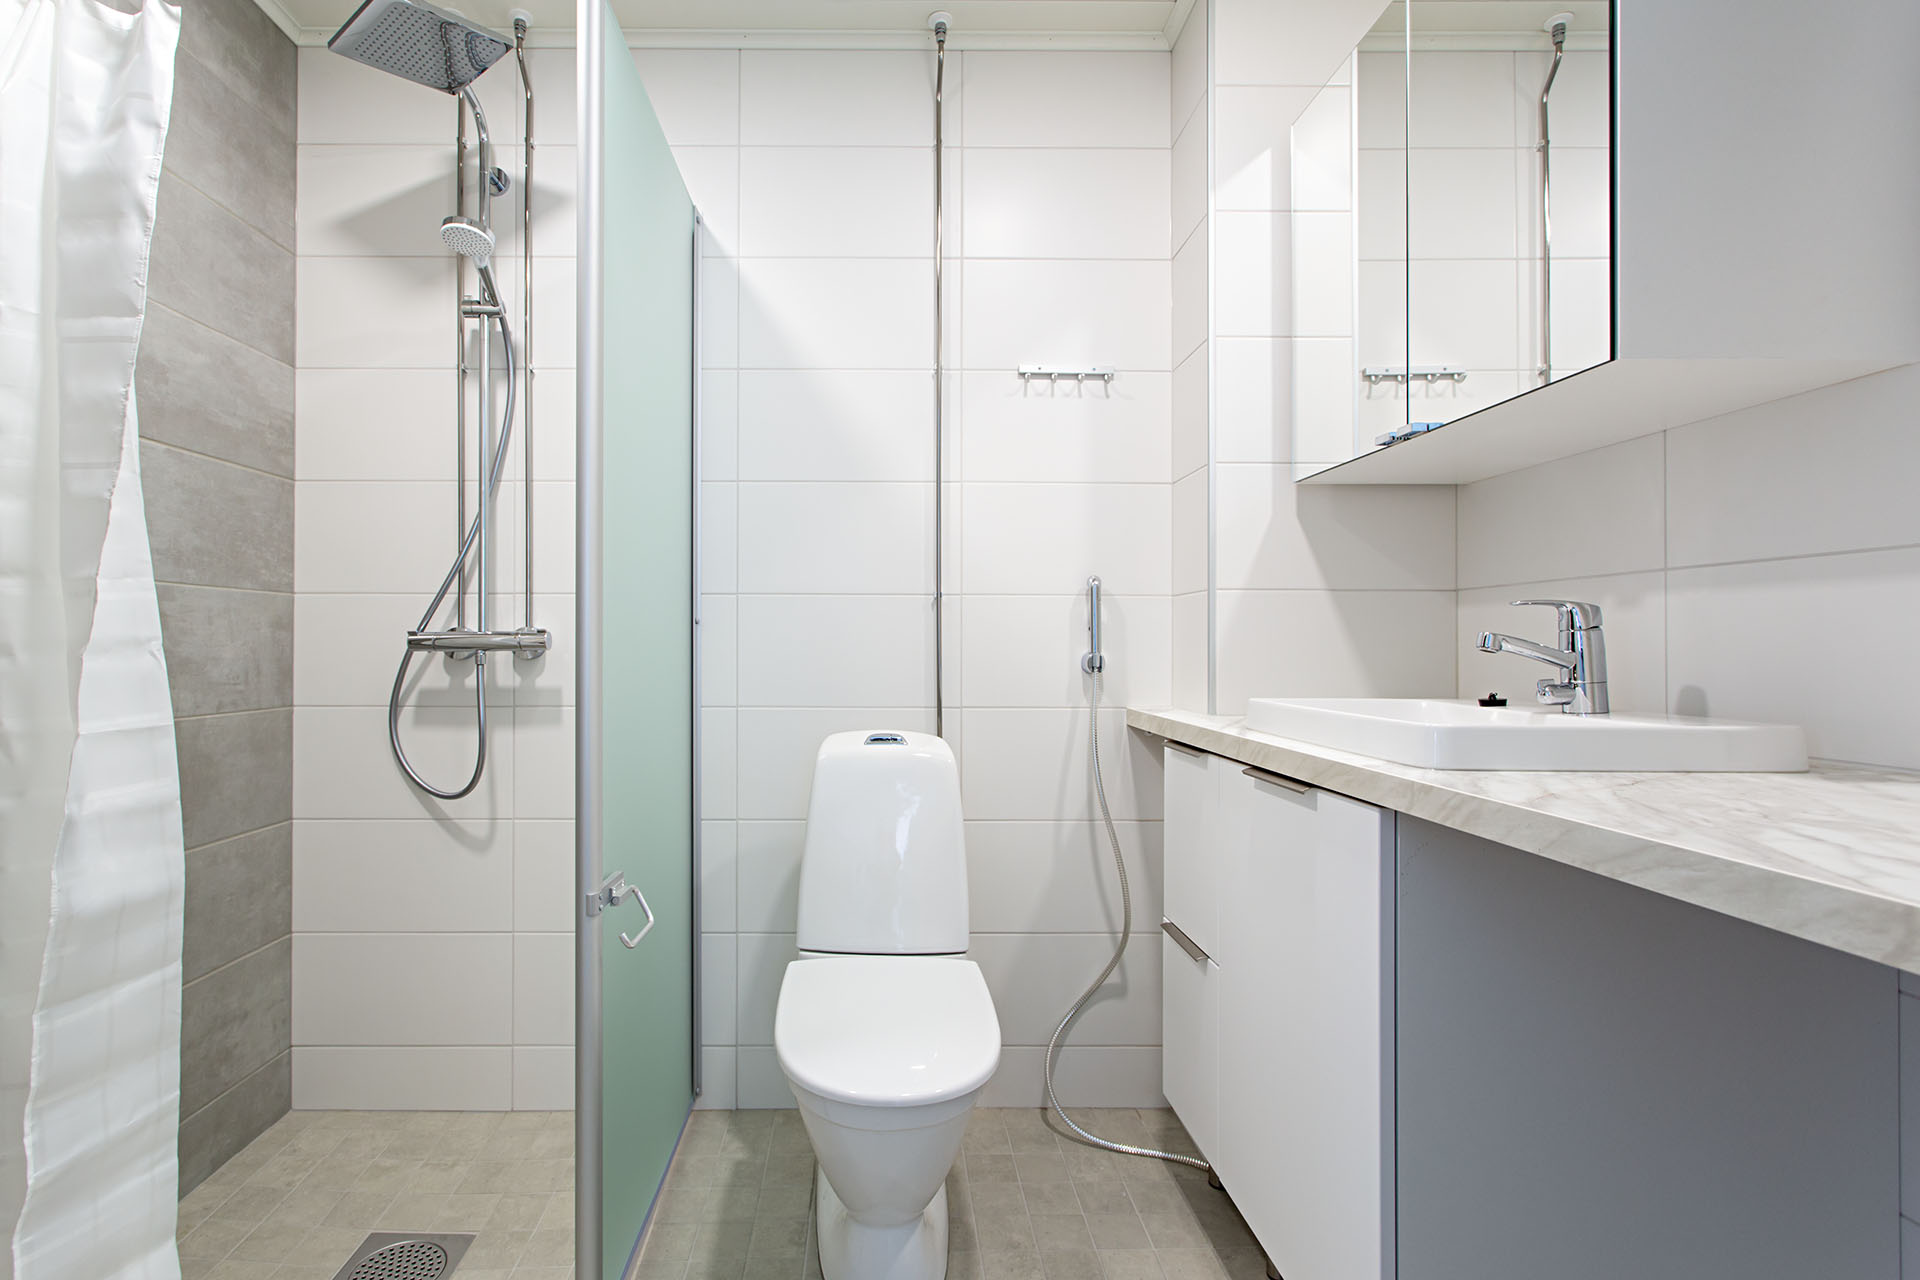 Kylpyhuone jossa keskellä WC, vasemmalla suihkutila ja oikealla lavuaari sekä peilikaappi